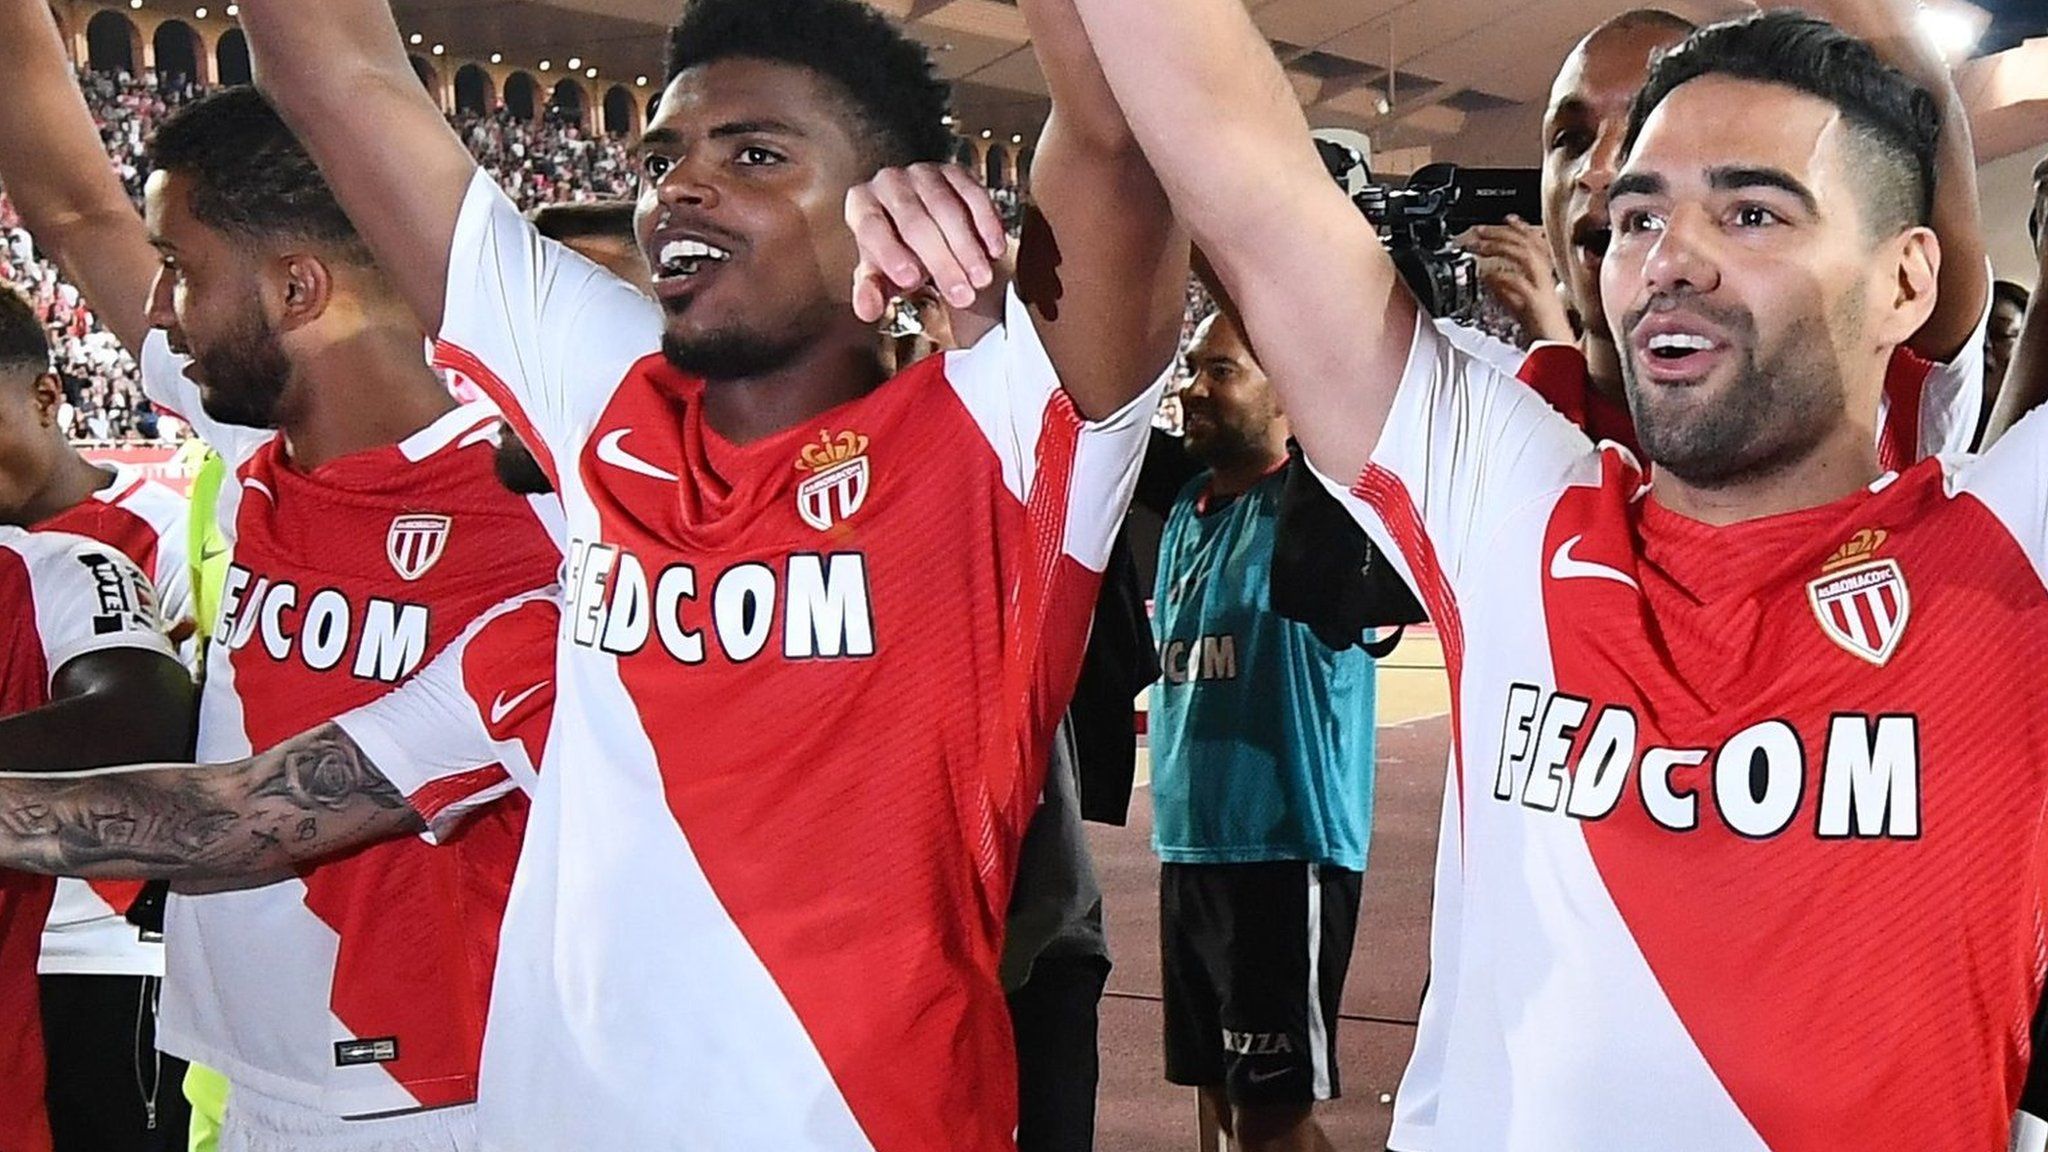 Monaco win the Ligue 1 title